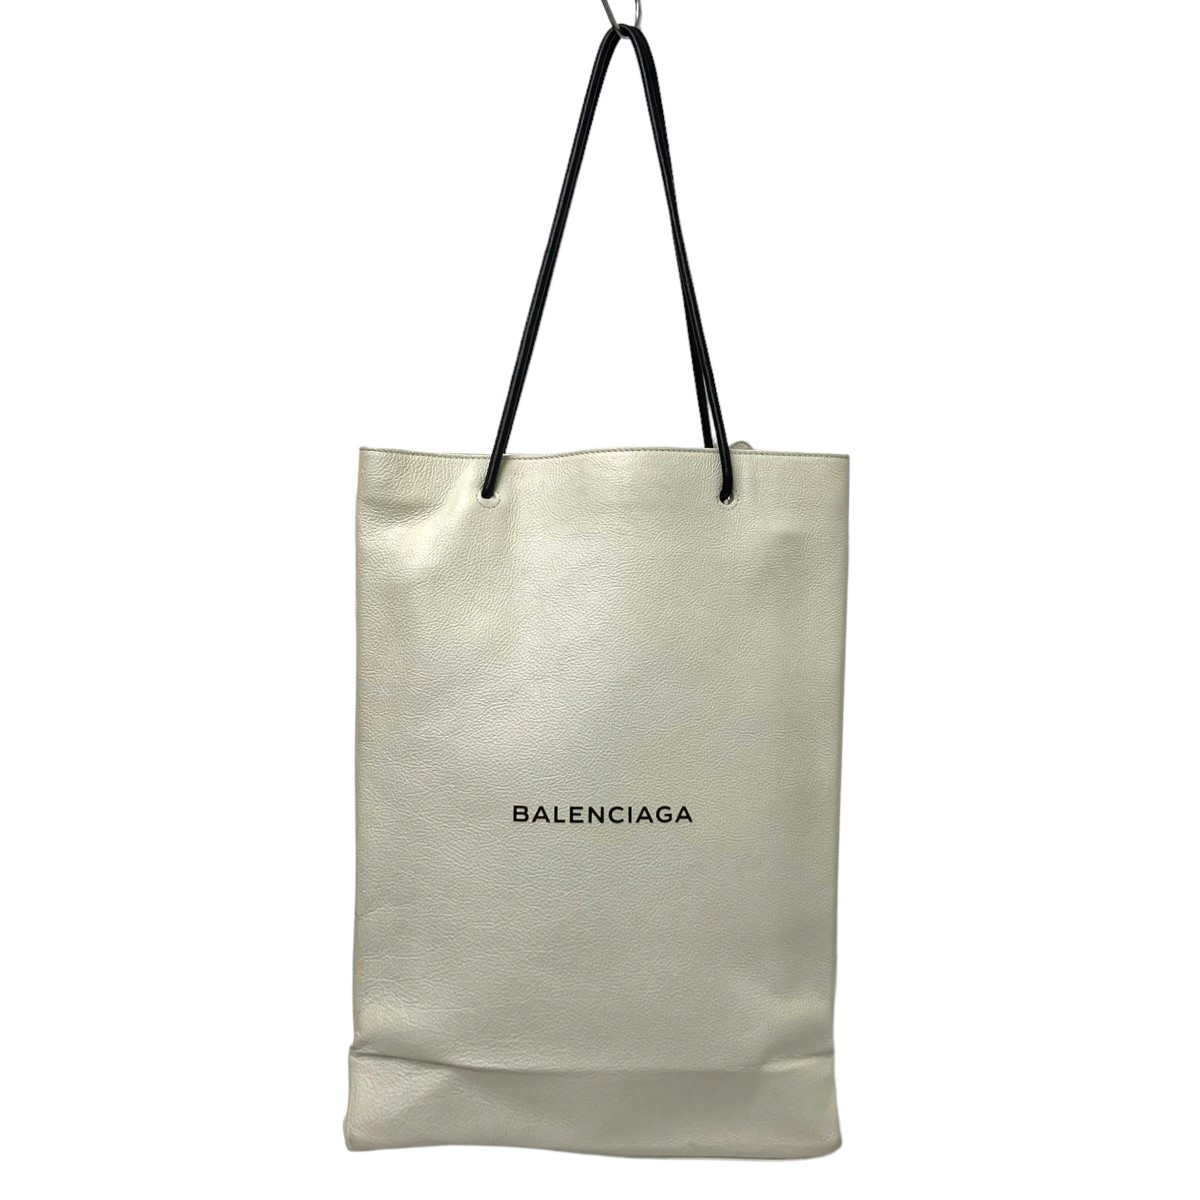 最高の品質 BALENCIAGA ノースサウスレザーショッピングトートバッグ